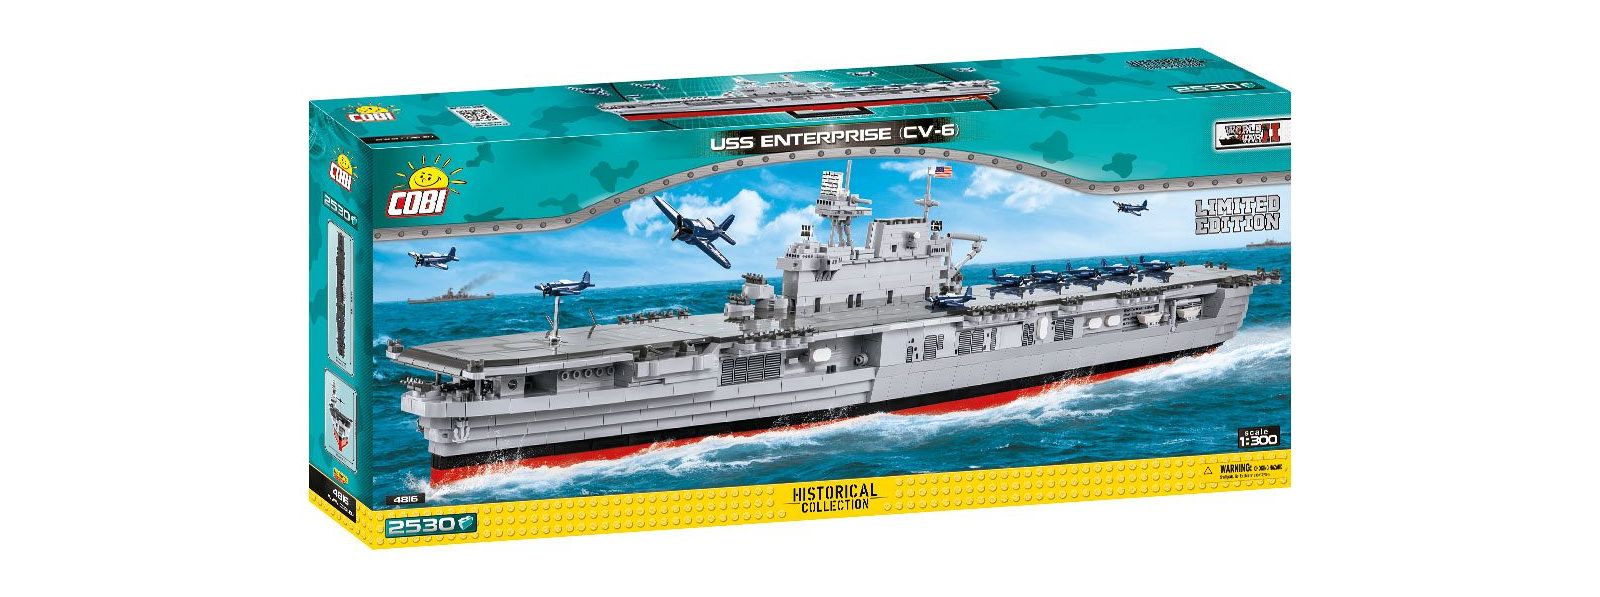 Start of shipment USS Enterprise!